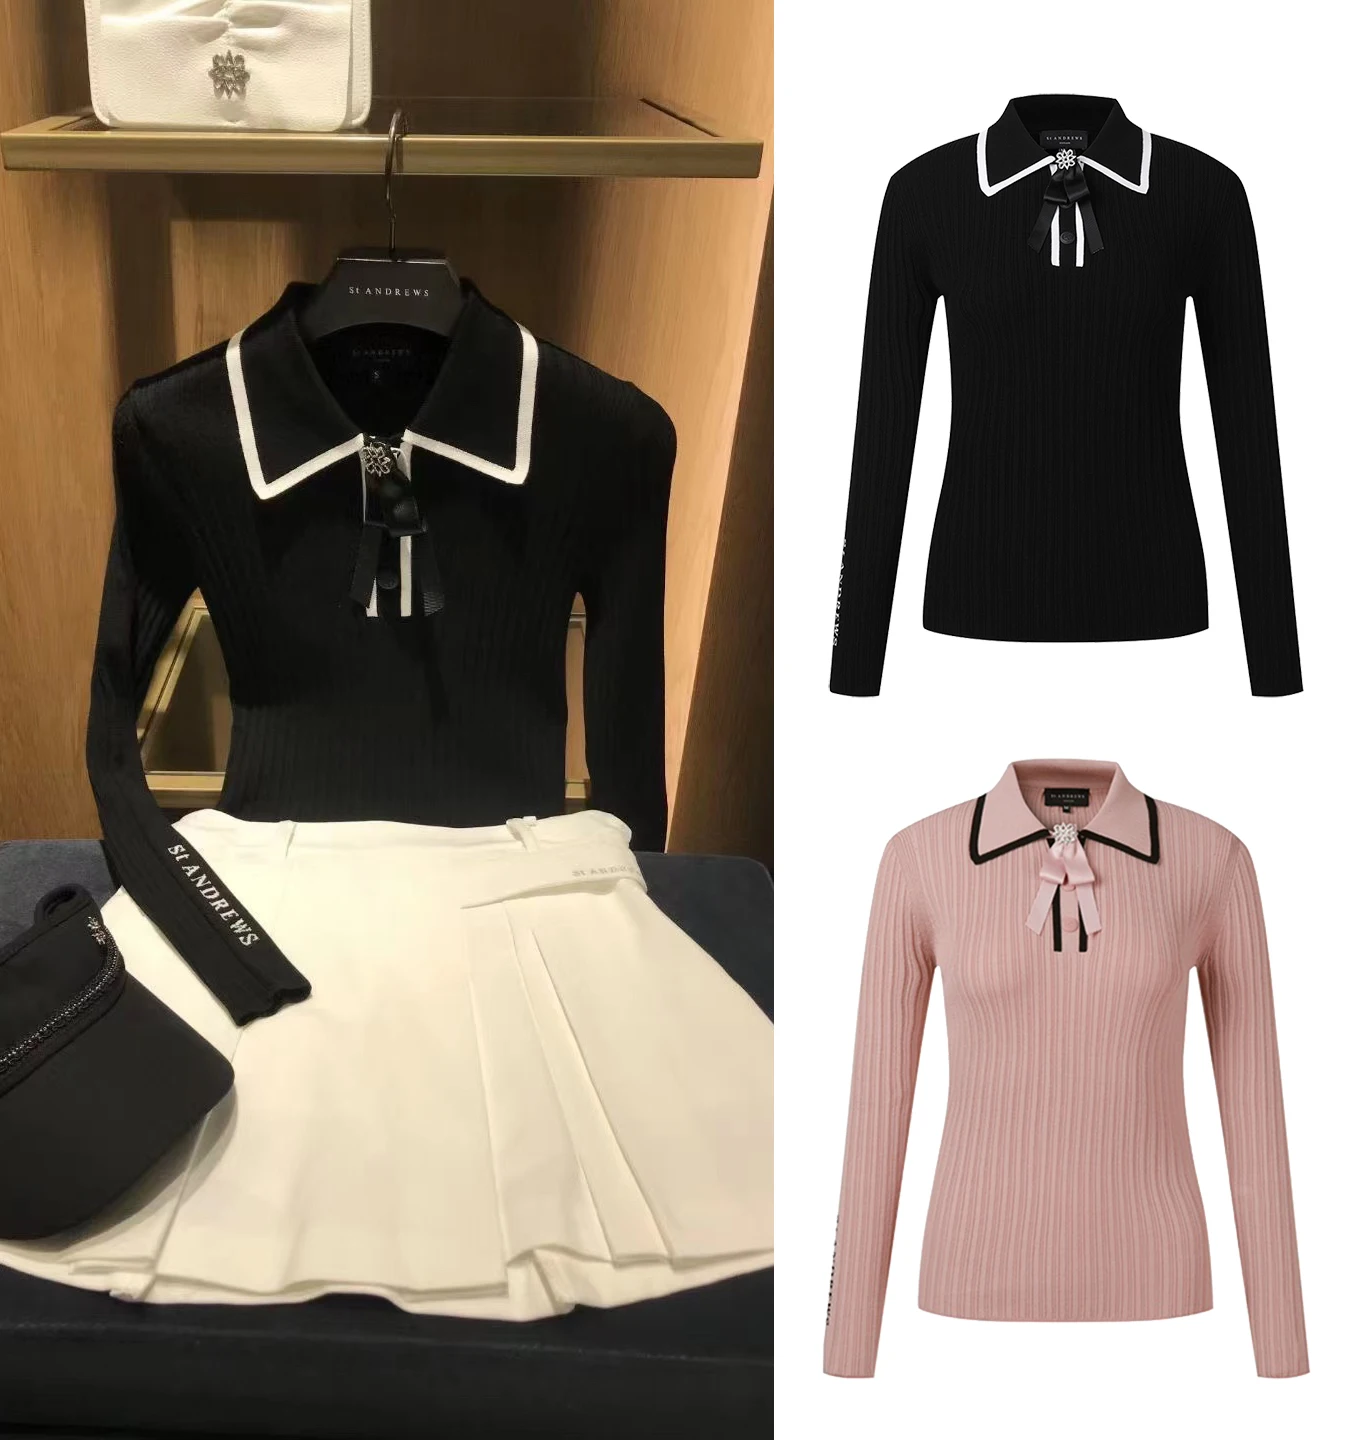 Sonbahar / Kış Yeni golf gömlekleri kadın Örgü POLO GÖMLEK Elastik Slim Fit Tasarım Örgü kaburga Gömlek Çift Dantel Yay İle Golf Üst